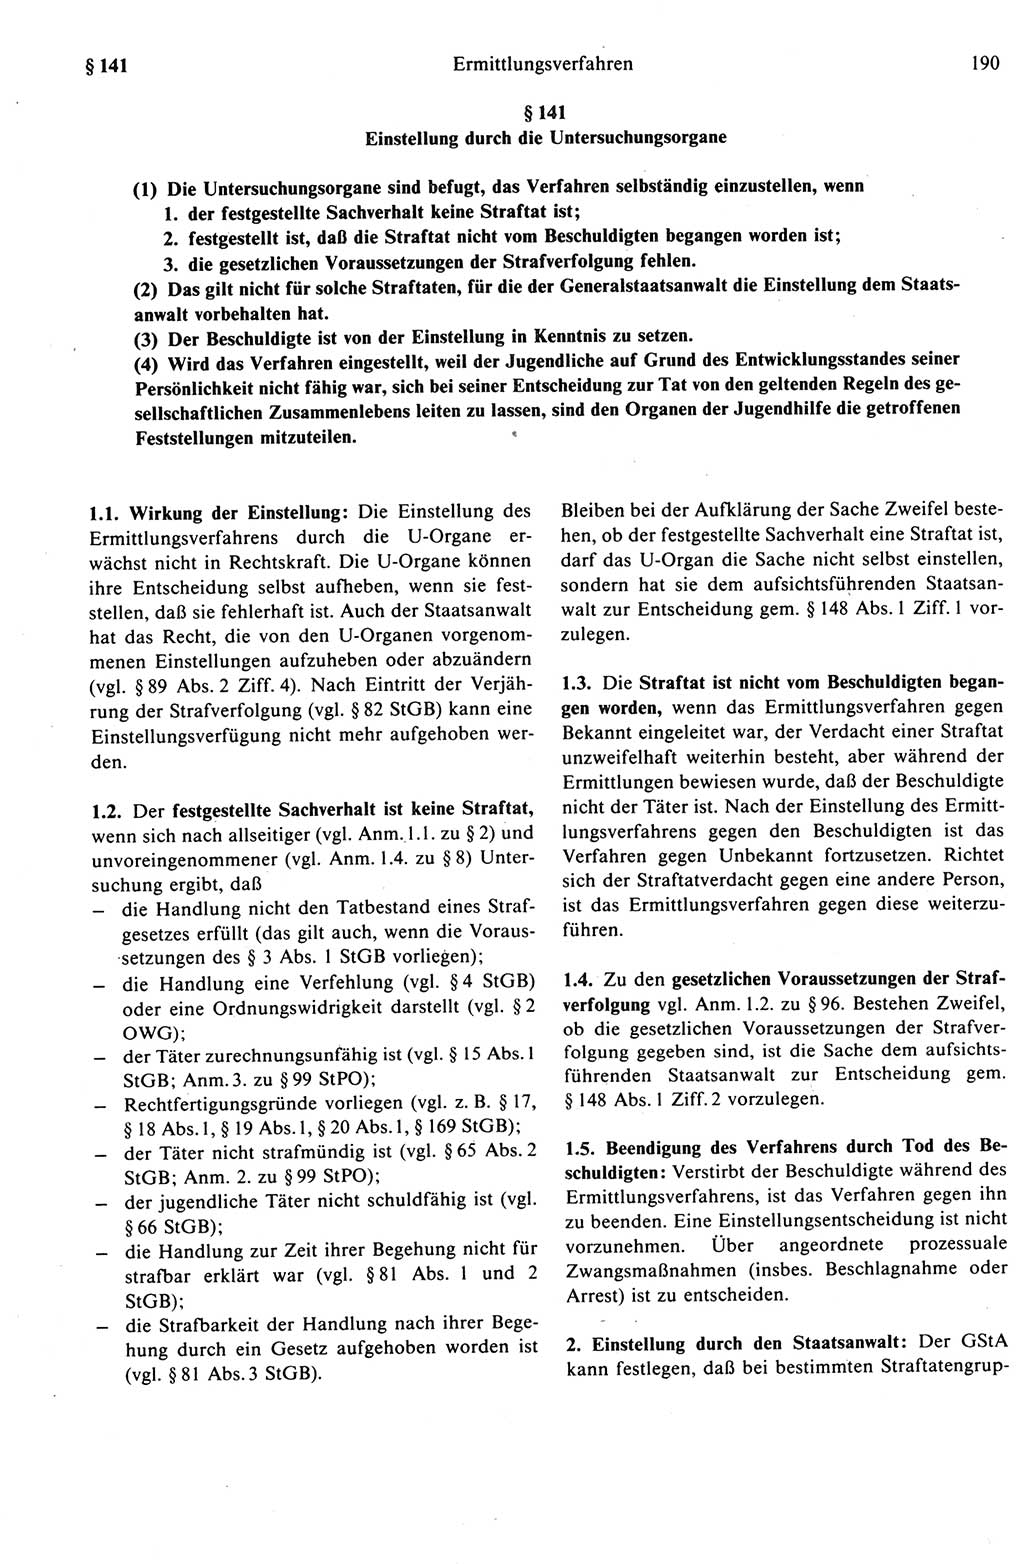 Strafprozeßrecht der DDR (Deutsche Demokratische Republik), Kommentar zur Strafprozeßordnung (StPO) 1989, Seite 190 (Strafprozeßr. DDR Komm. StPO 1989, S. 190)